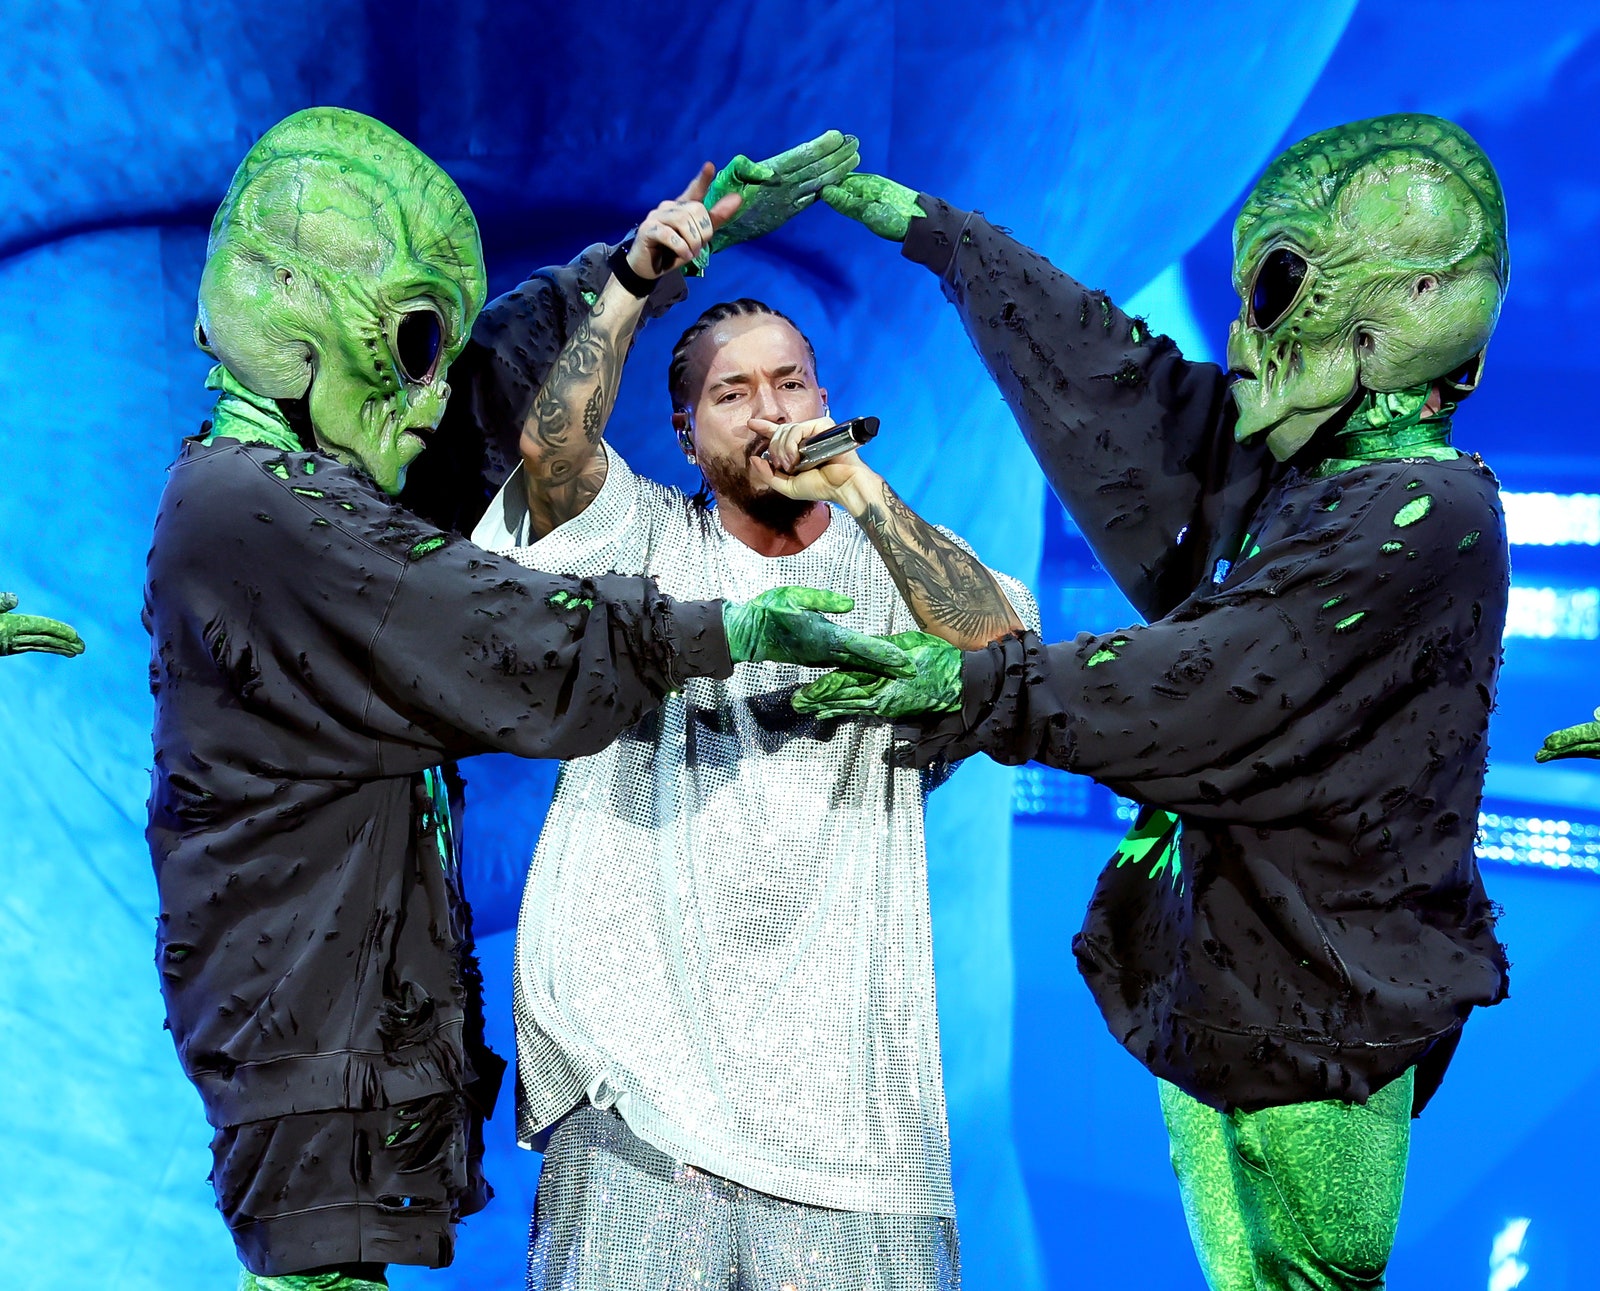 J Balvin performs between two green aliens